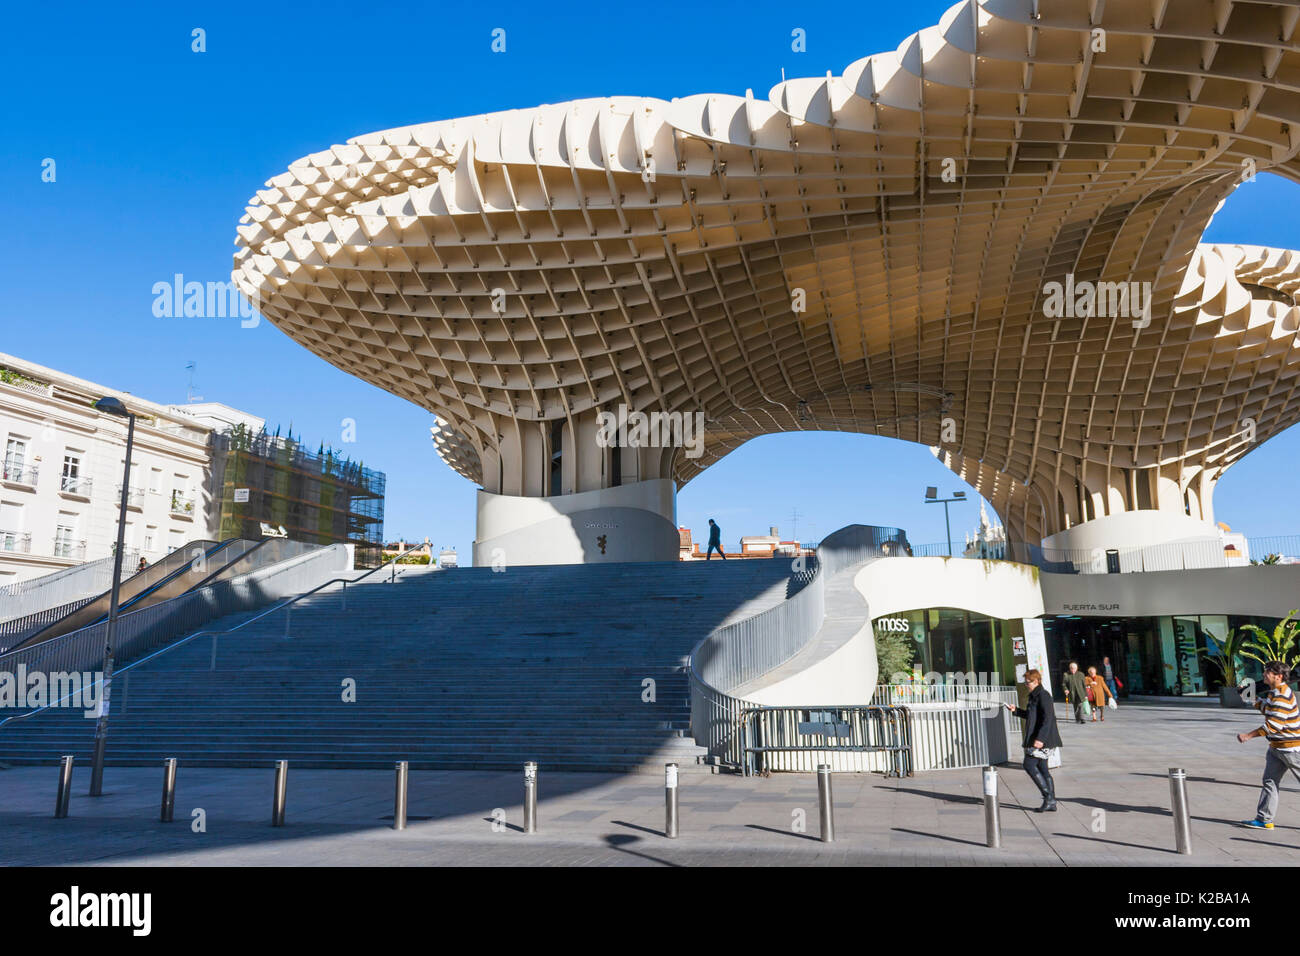 El Metropol Parasol, plaza de la Encarnación, Sevilla, España. Una estructura de madera diseñada por el arquitecto alemán Jürgen Mayer Foto de stock